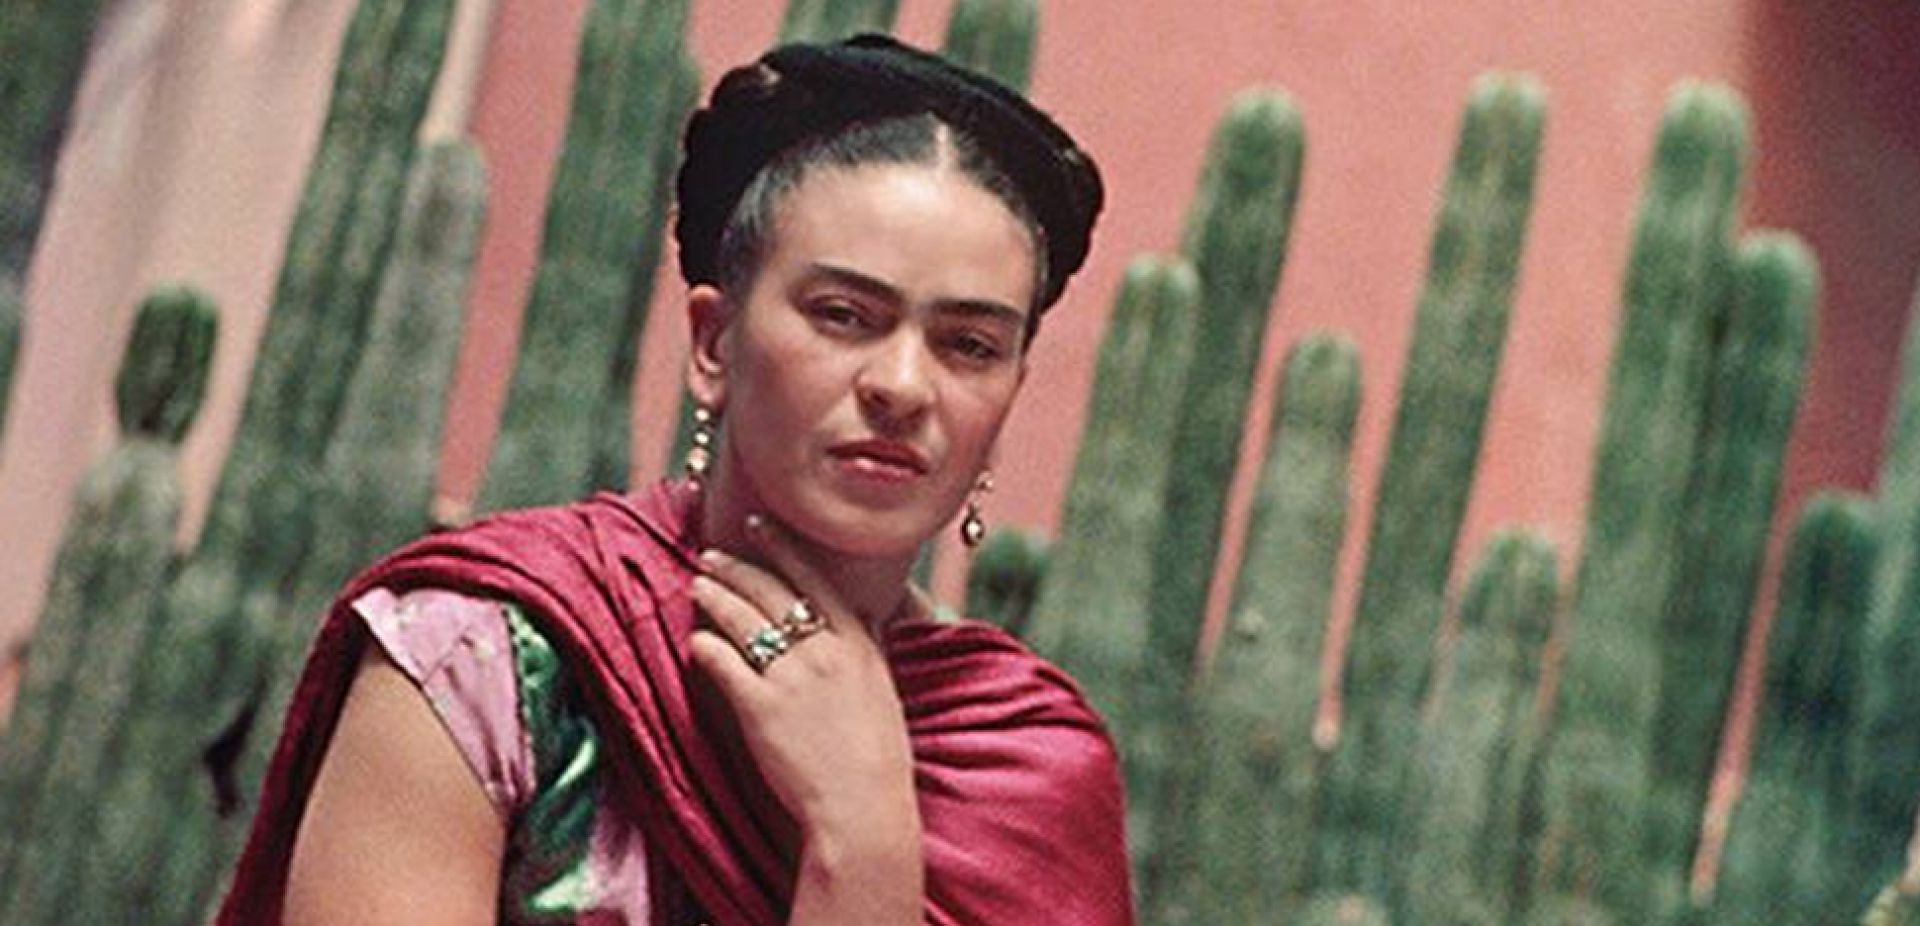 Kobieta na tle kaktusów w czerwonym szalu